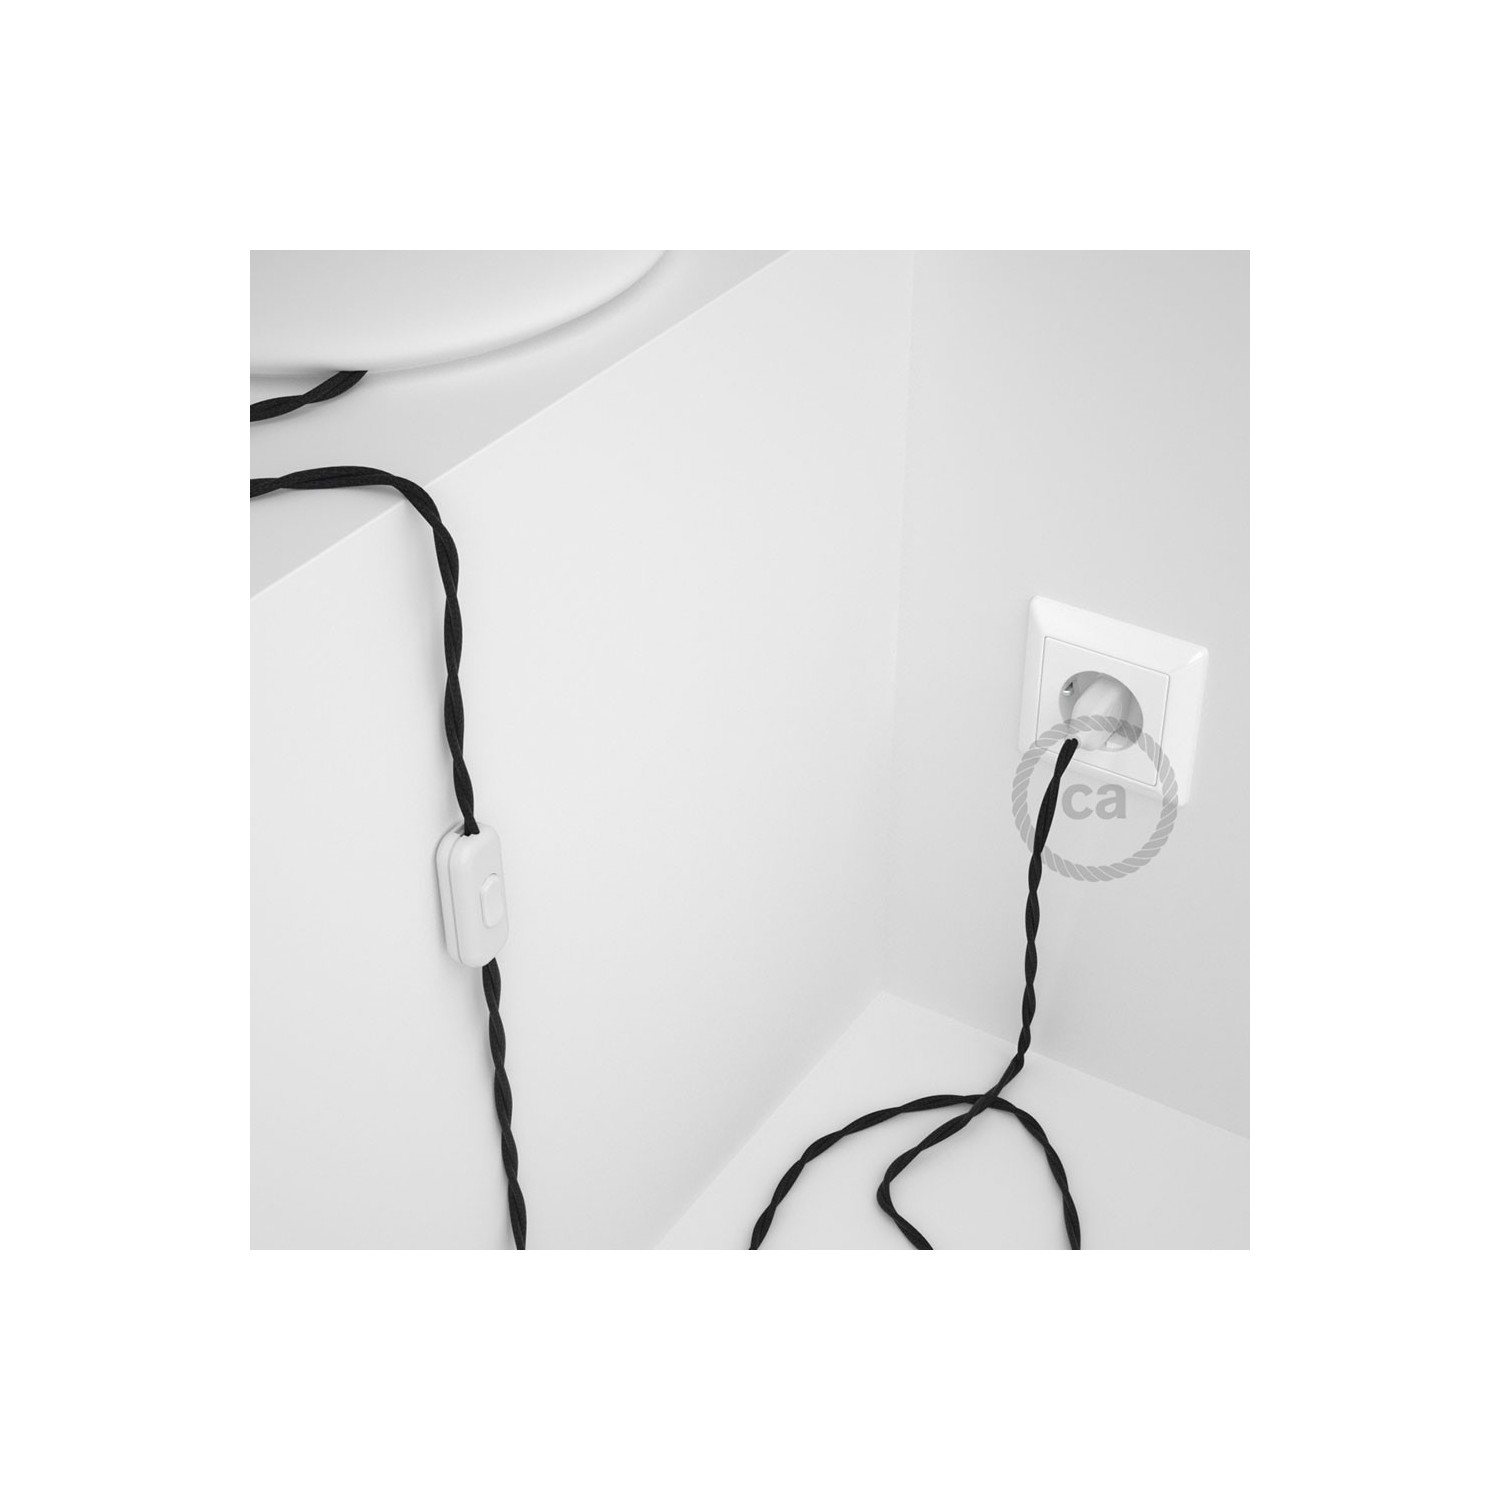 Cordon pour lampe, câble TC04 Coton Noir 1,80 m. Choisissez la couleur de la fiche et de l'interrupteur!